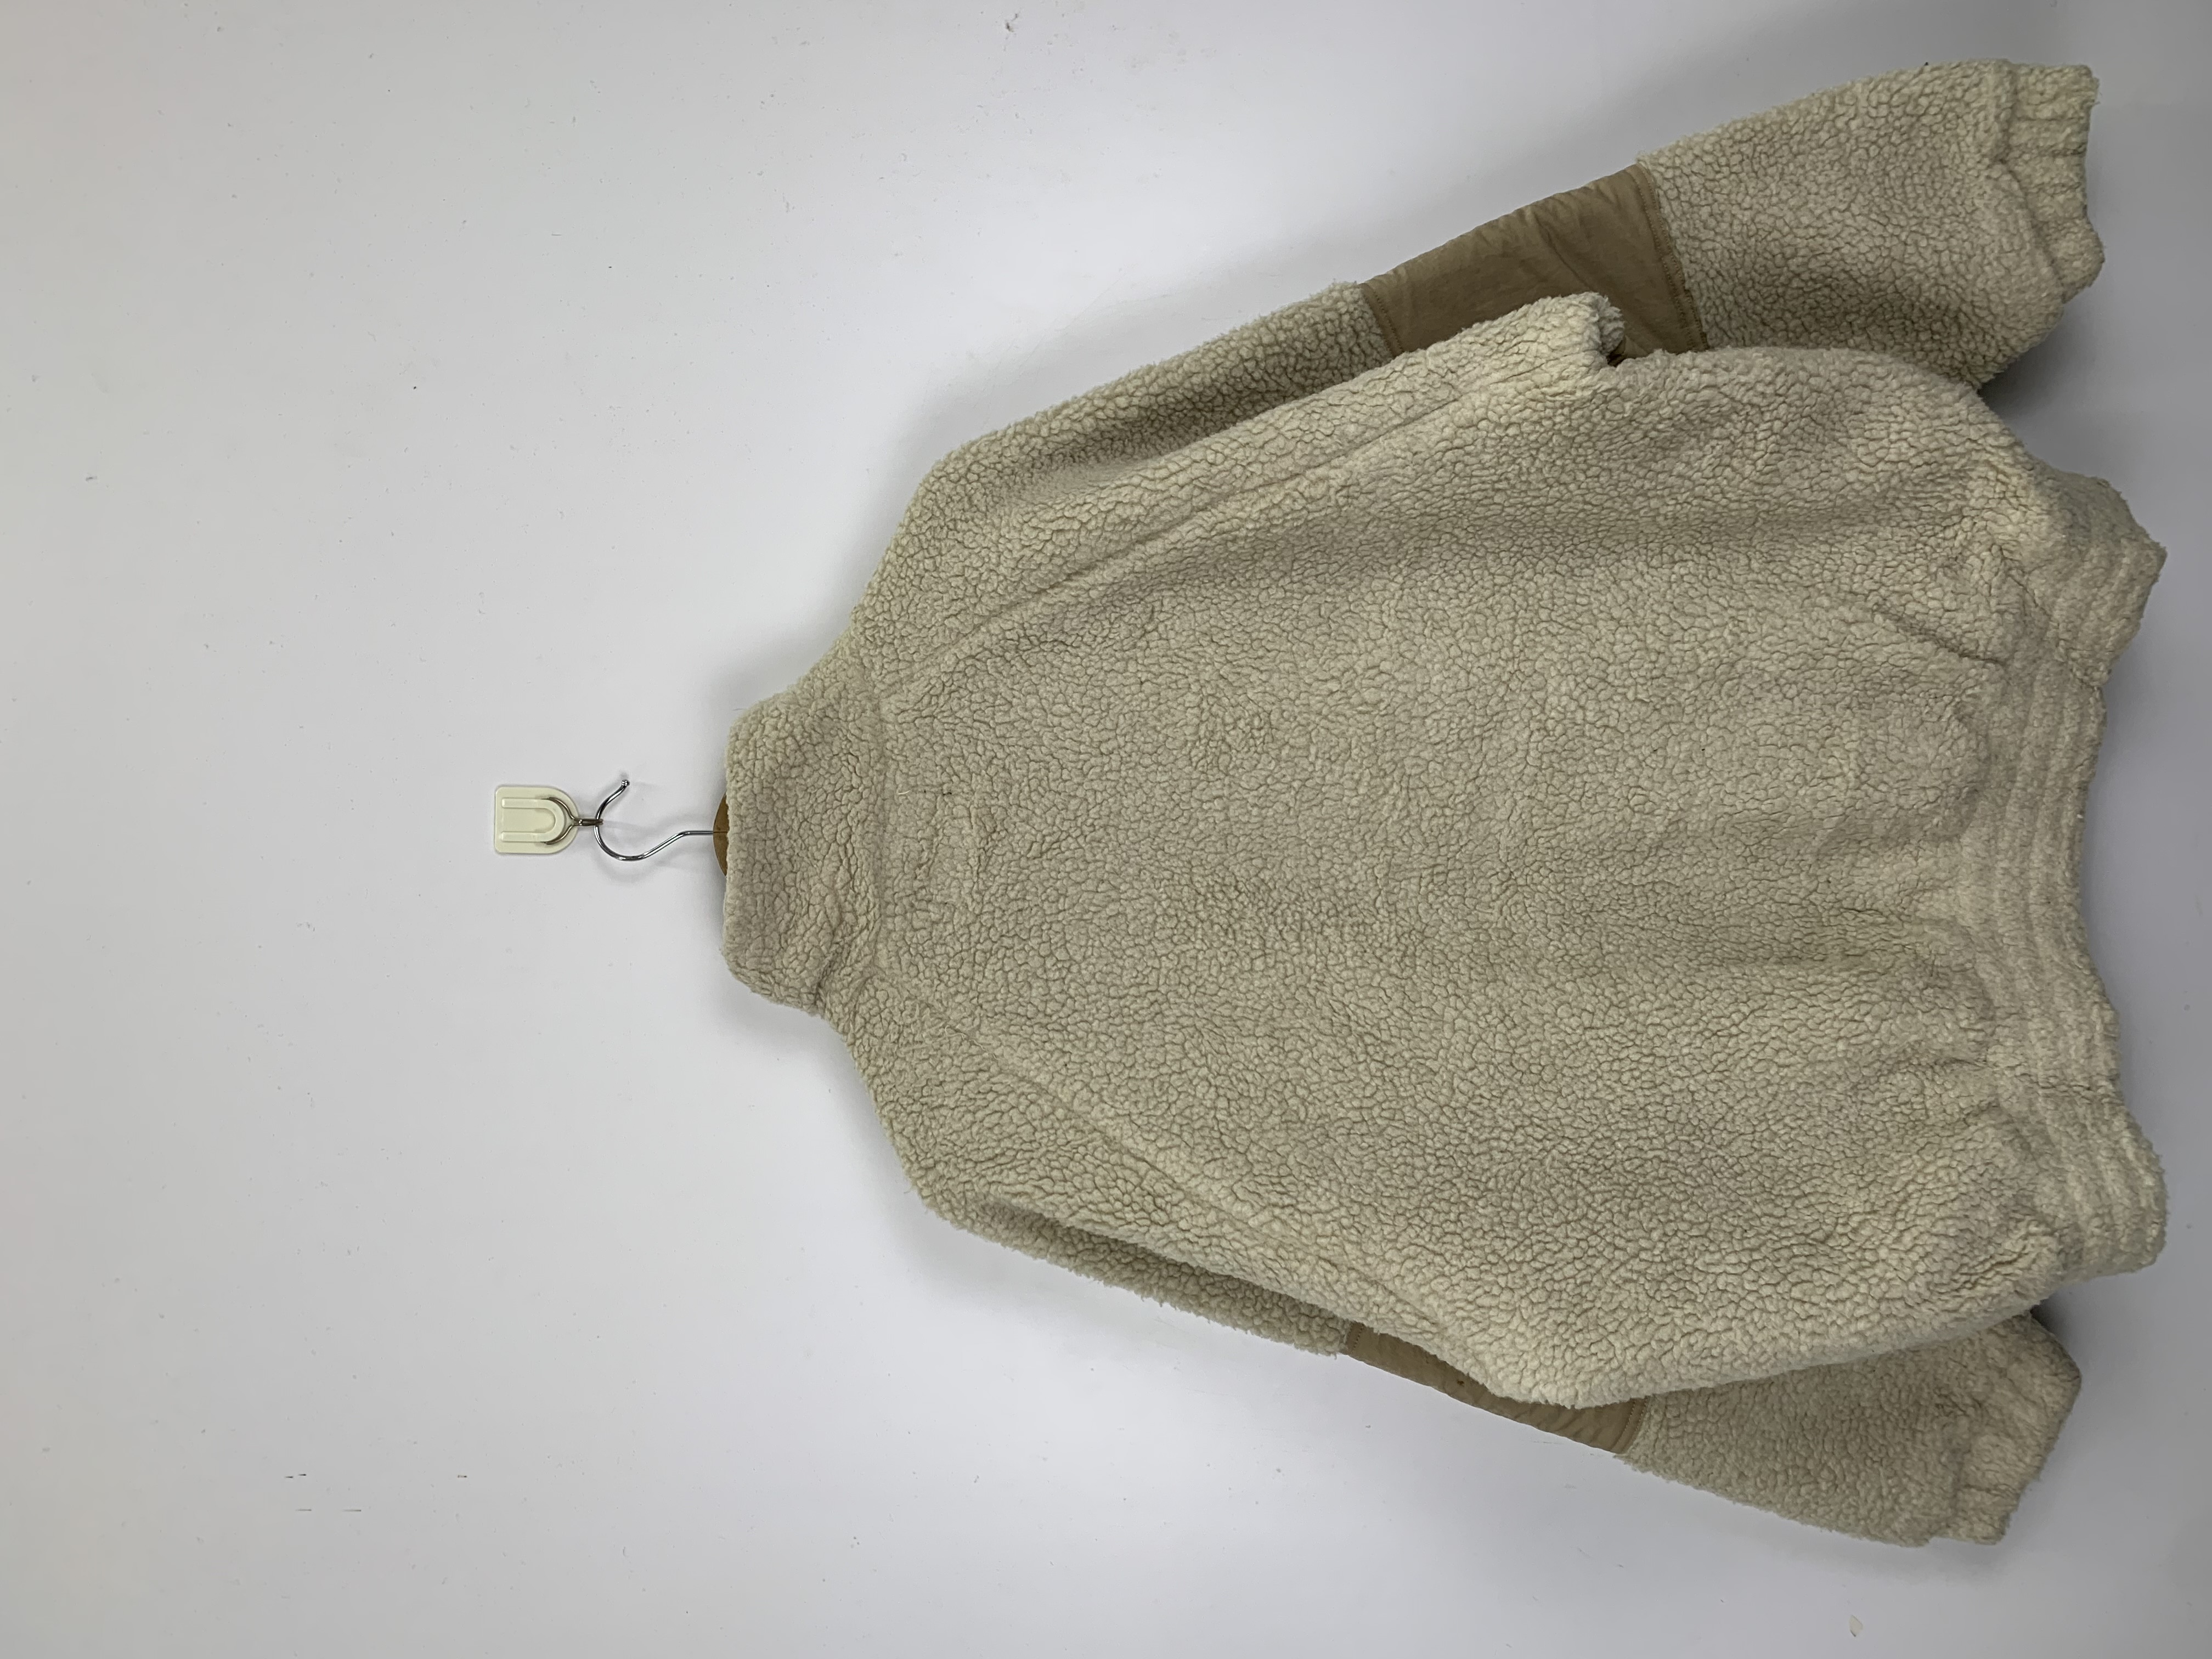 Vintage - Vintage Japanese Brand Matted Fleece Jacket - 6